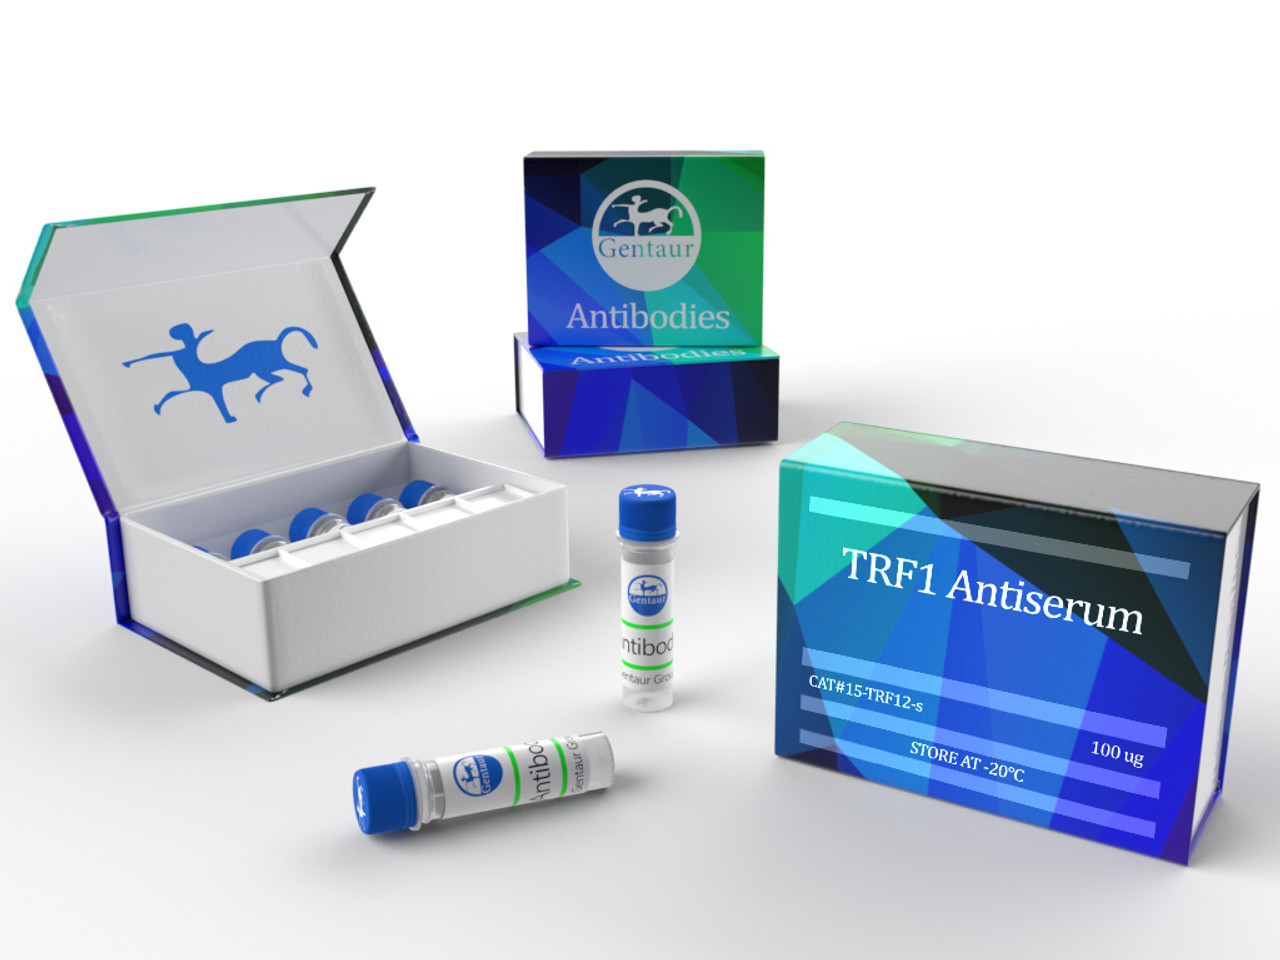 TRF1 Antiserum